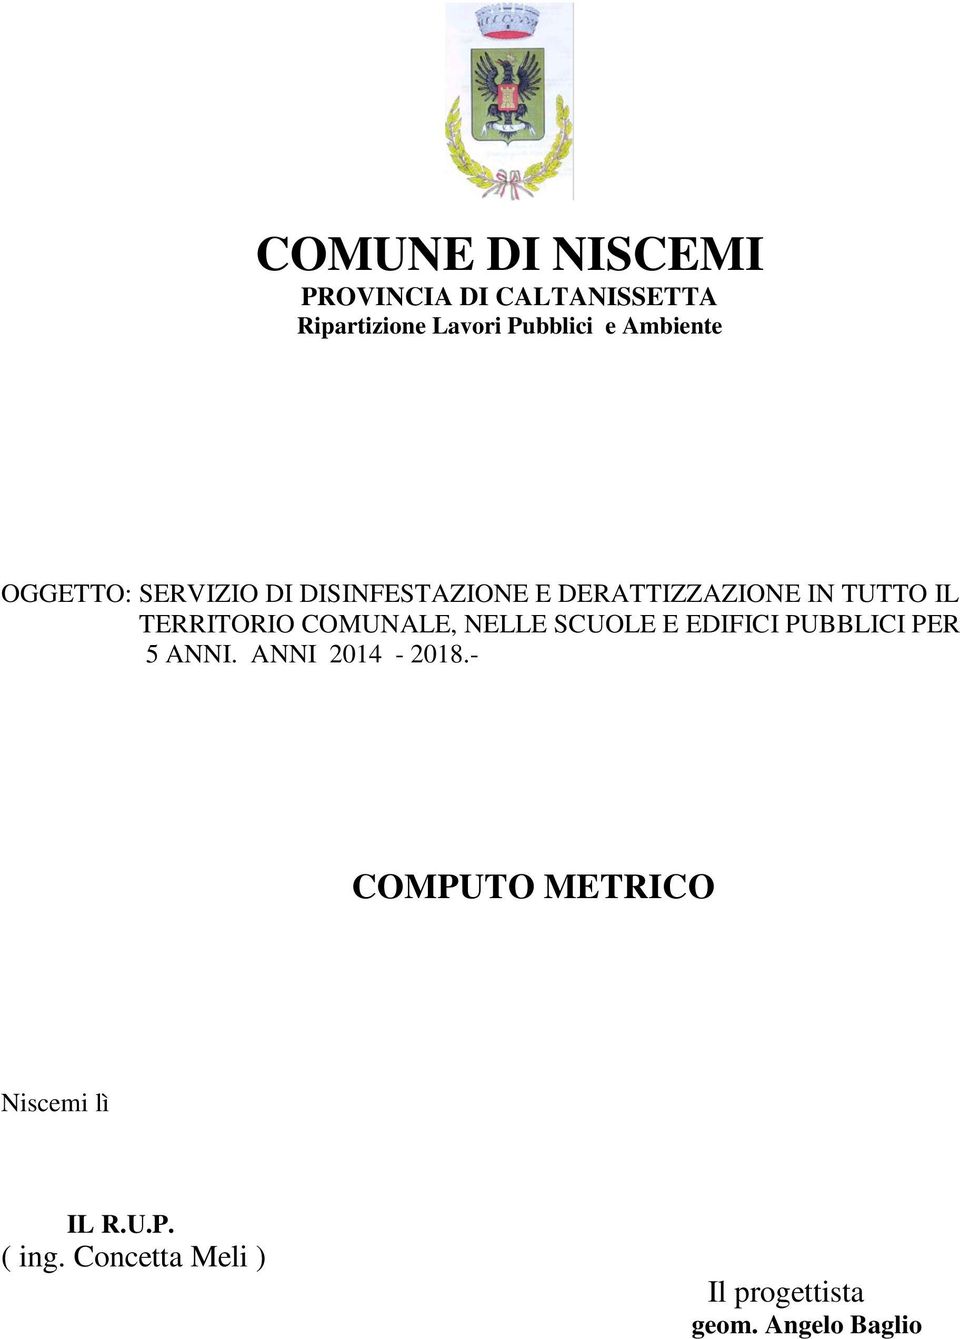 TERRITORIO COMUNALE, NELLE SCUOLE E EDIFICI PUBBLICI PER 5 ANNI. ANNI 2014-2018.